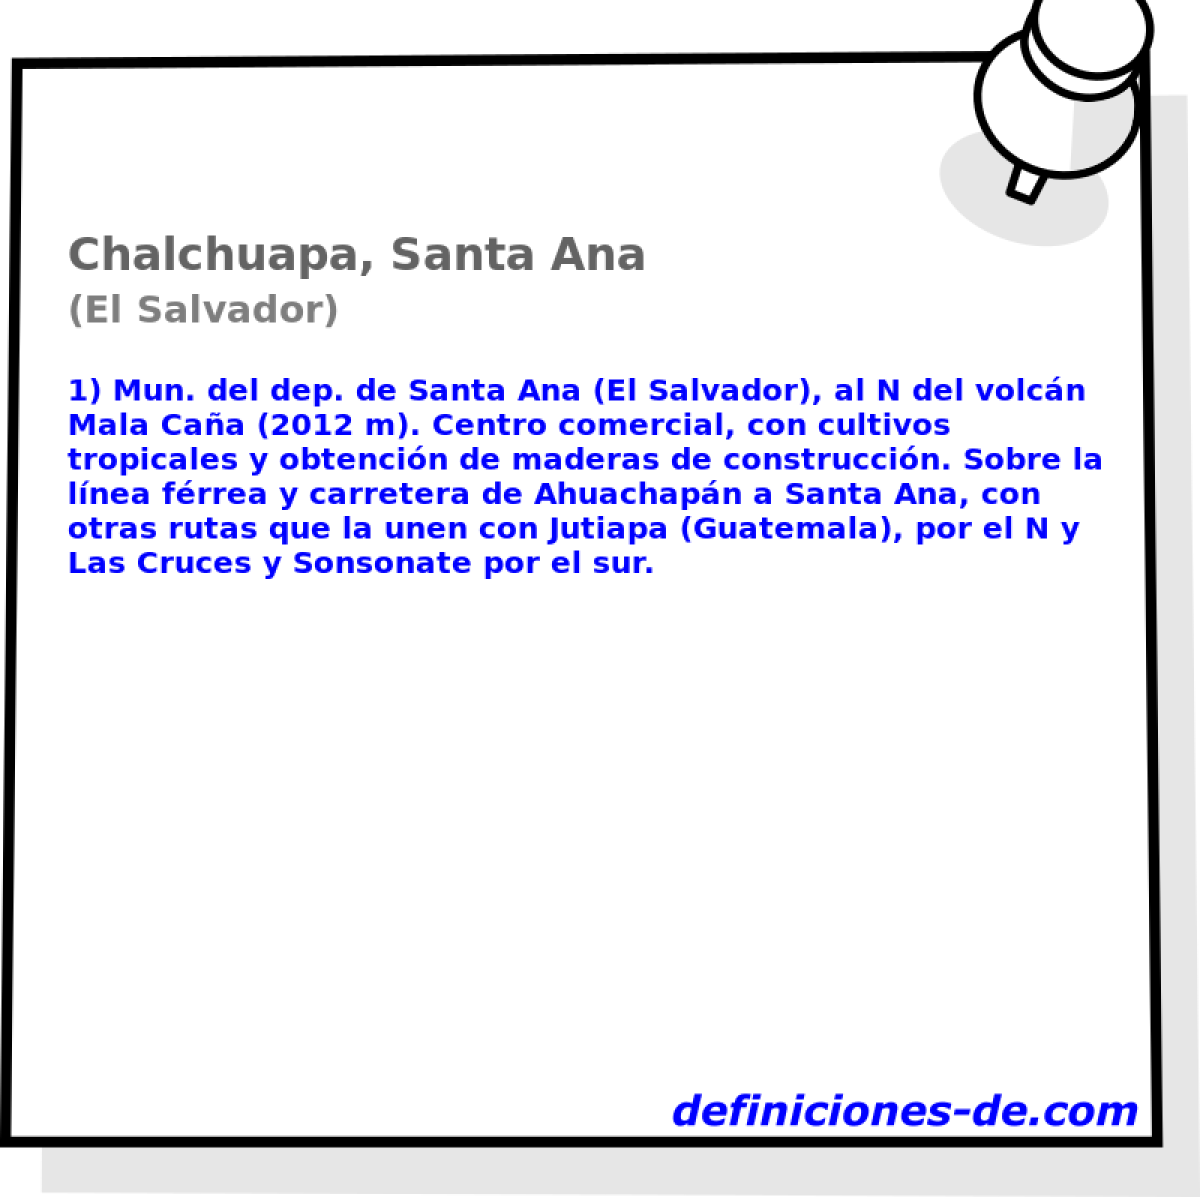 Chalchuapa, Santa Ana (El Salvador)